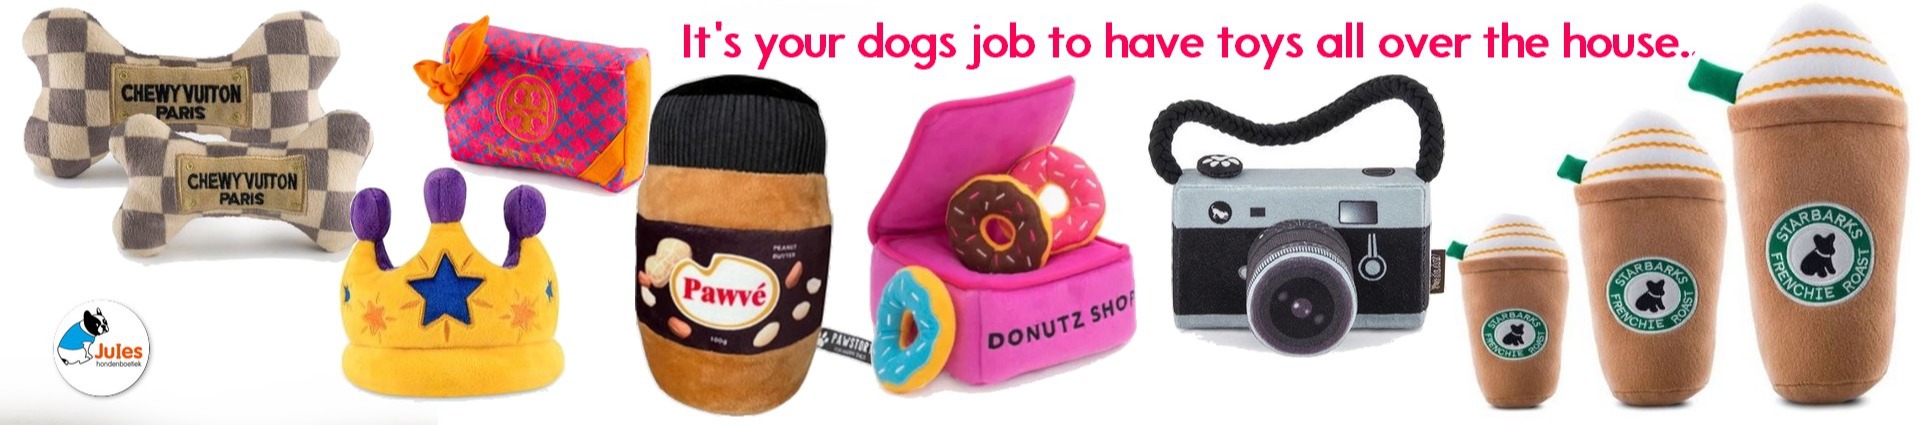 Speelgoed voor honden en hondenspeelgoed van Zippypaws, Fuzzyard en Nylabone